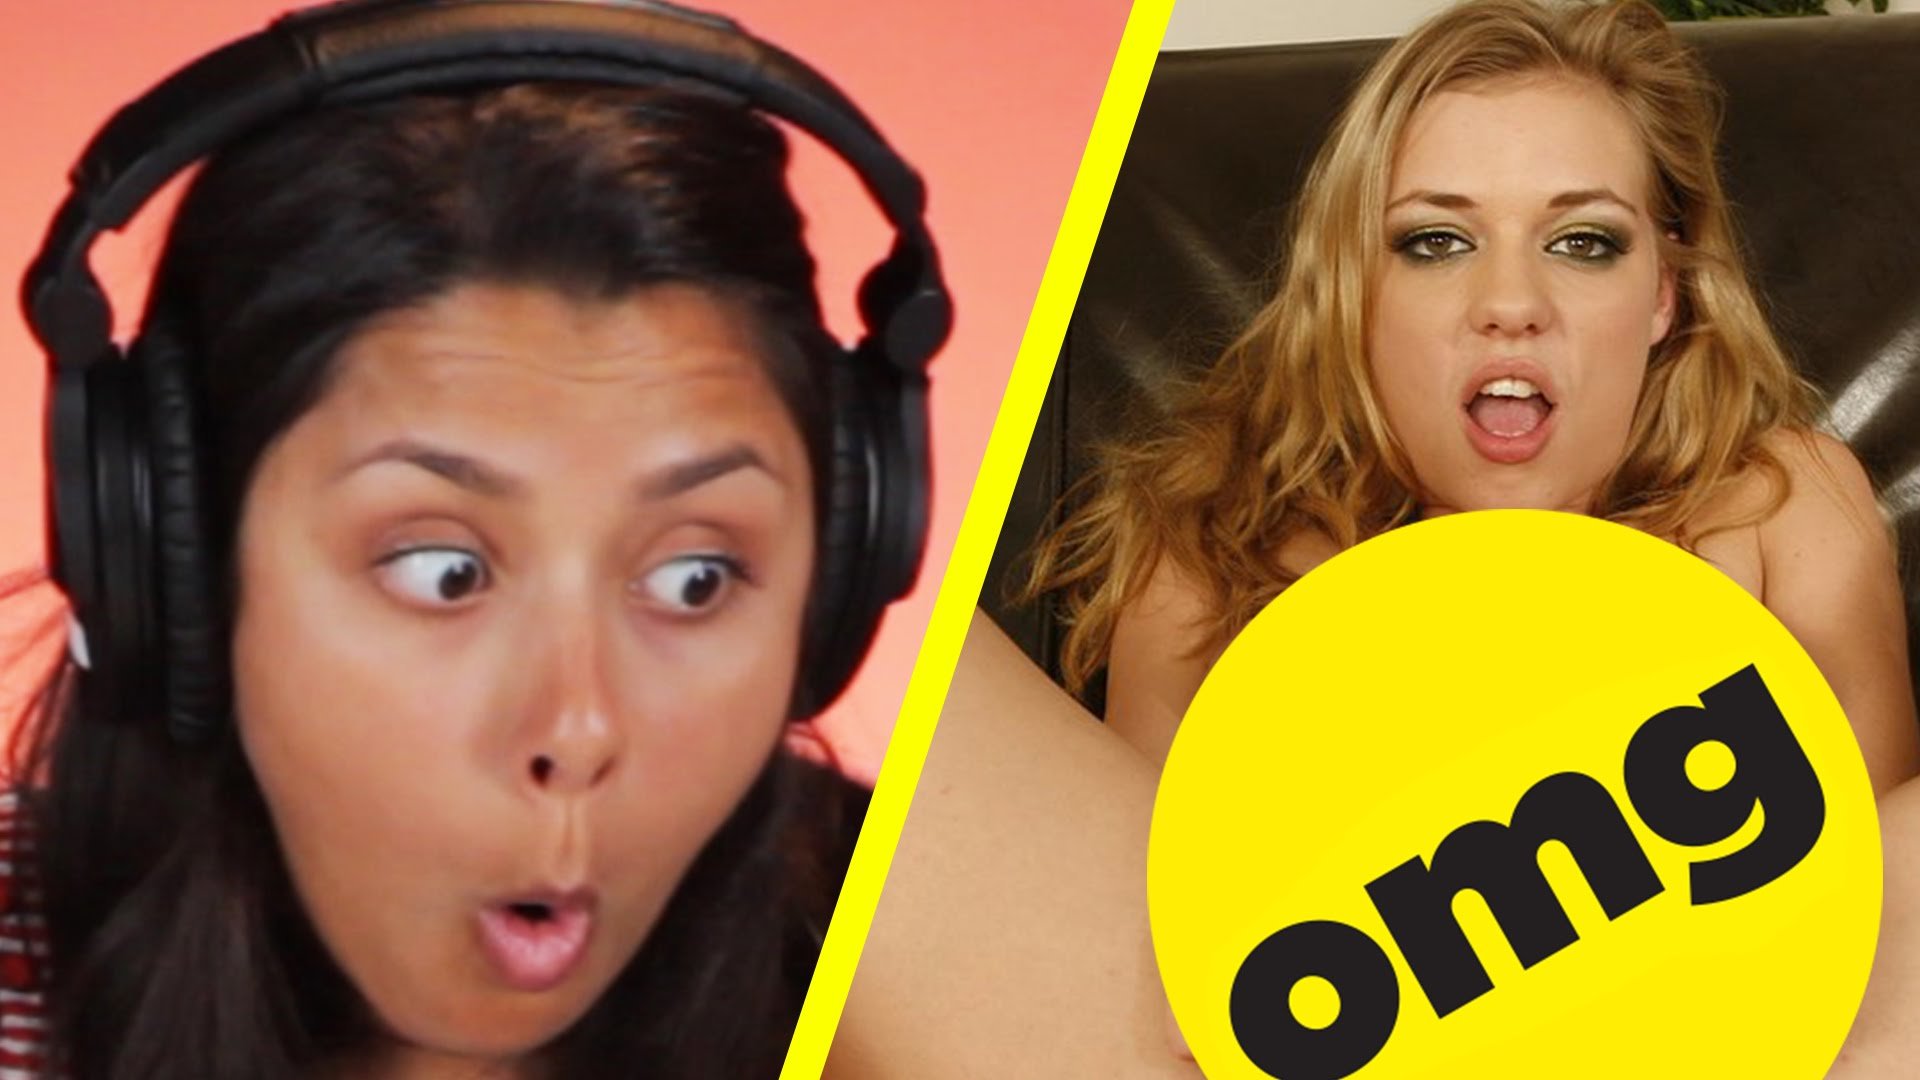 Ξεκαρδιστικό βίντεο με γυναίκες που βλέπουν για πρώτη φορά πορνό!